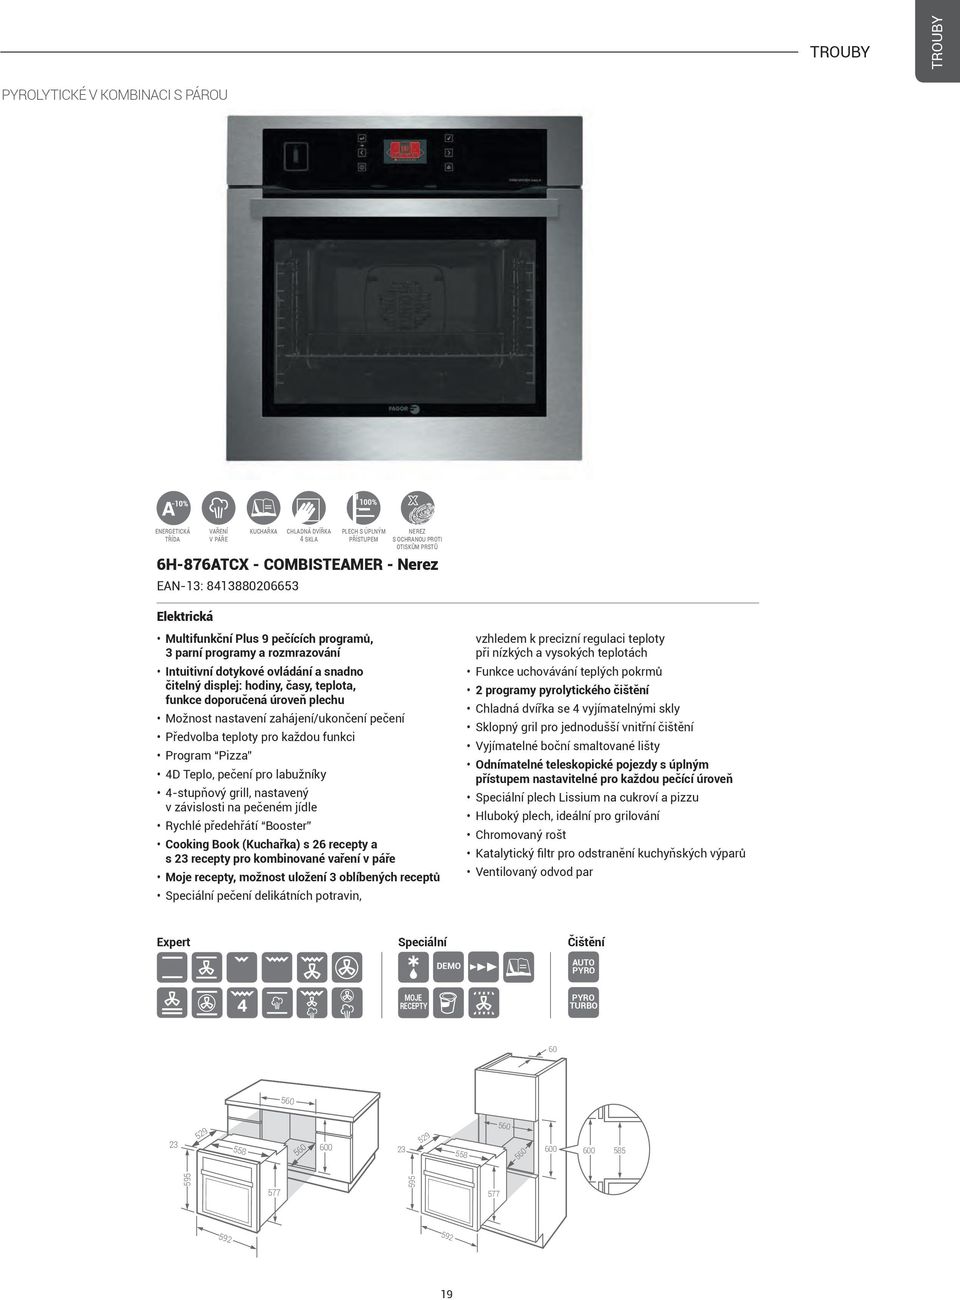 teplota, funkce doporučená úroveň plechu Možnost nastavení zahájení/ukončení pečení Předvolba teploty pro každou funkci Program Pizza 4D Teplo, pečení pro labužníky 4-stupňový grill, nastavený v